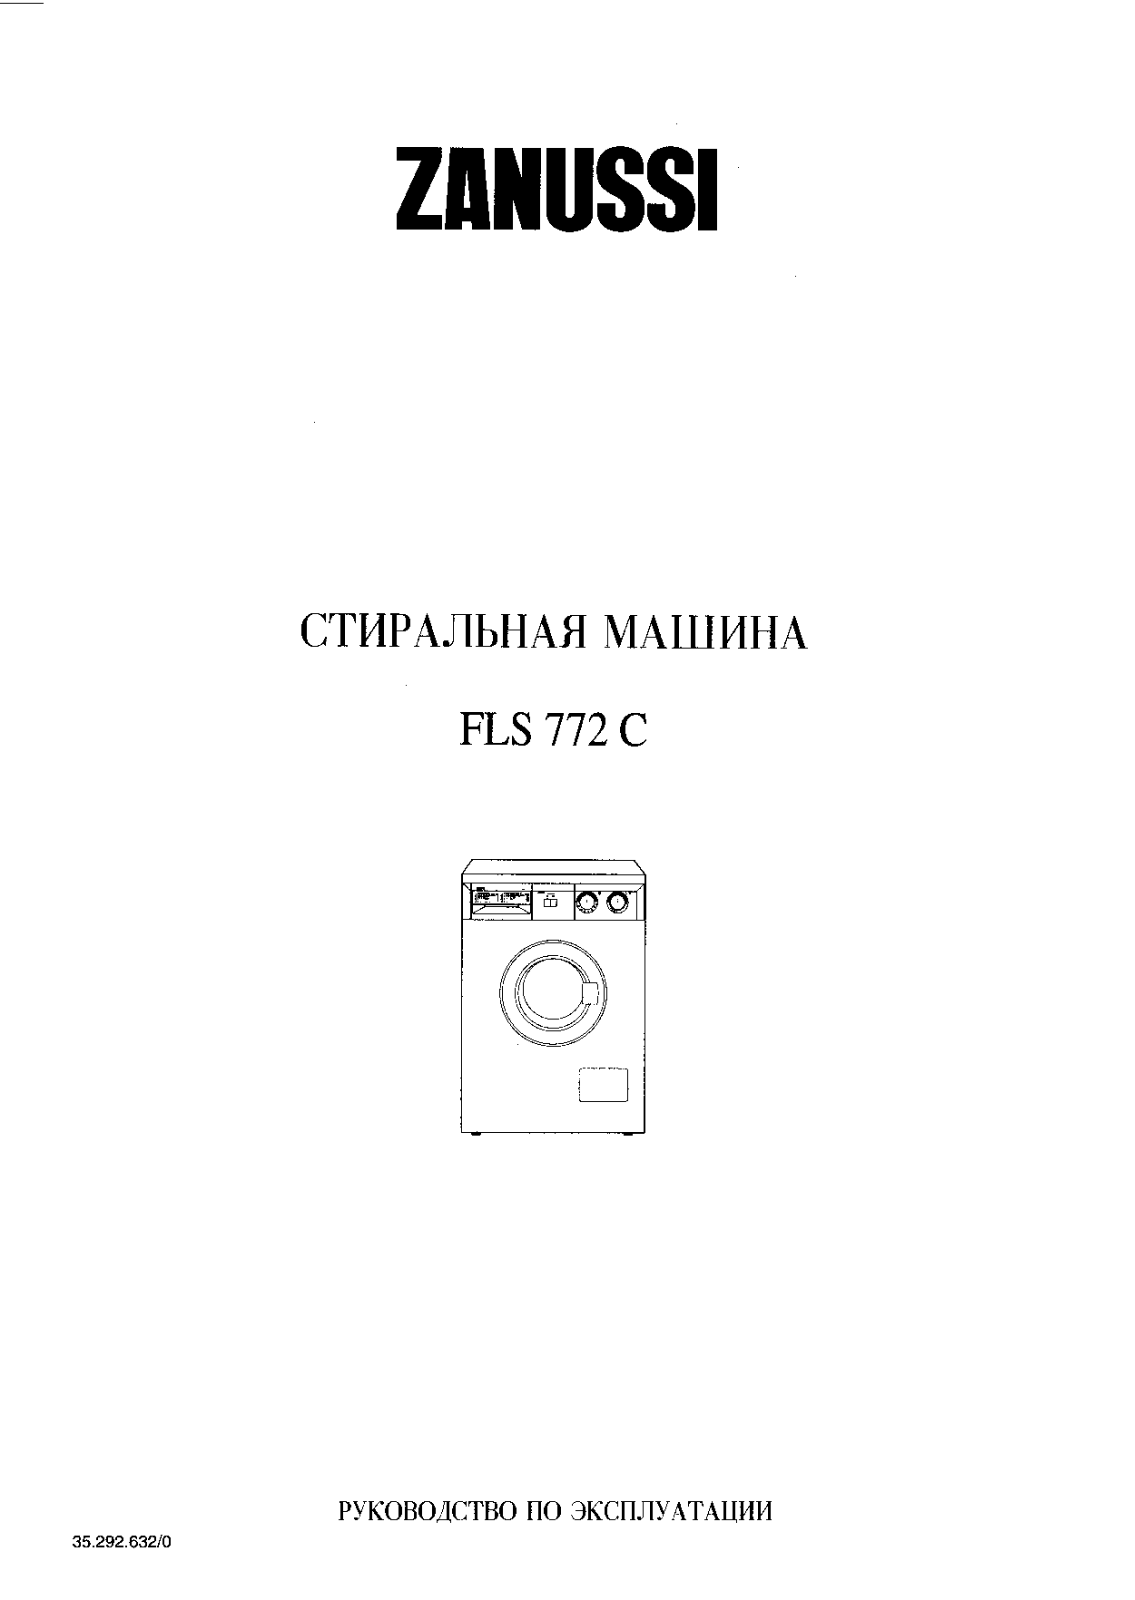 Zanussi FLS 772 C User Manual